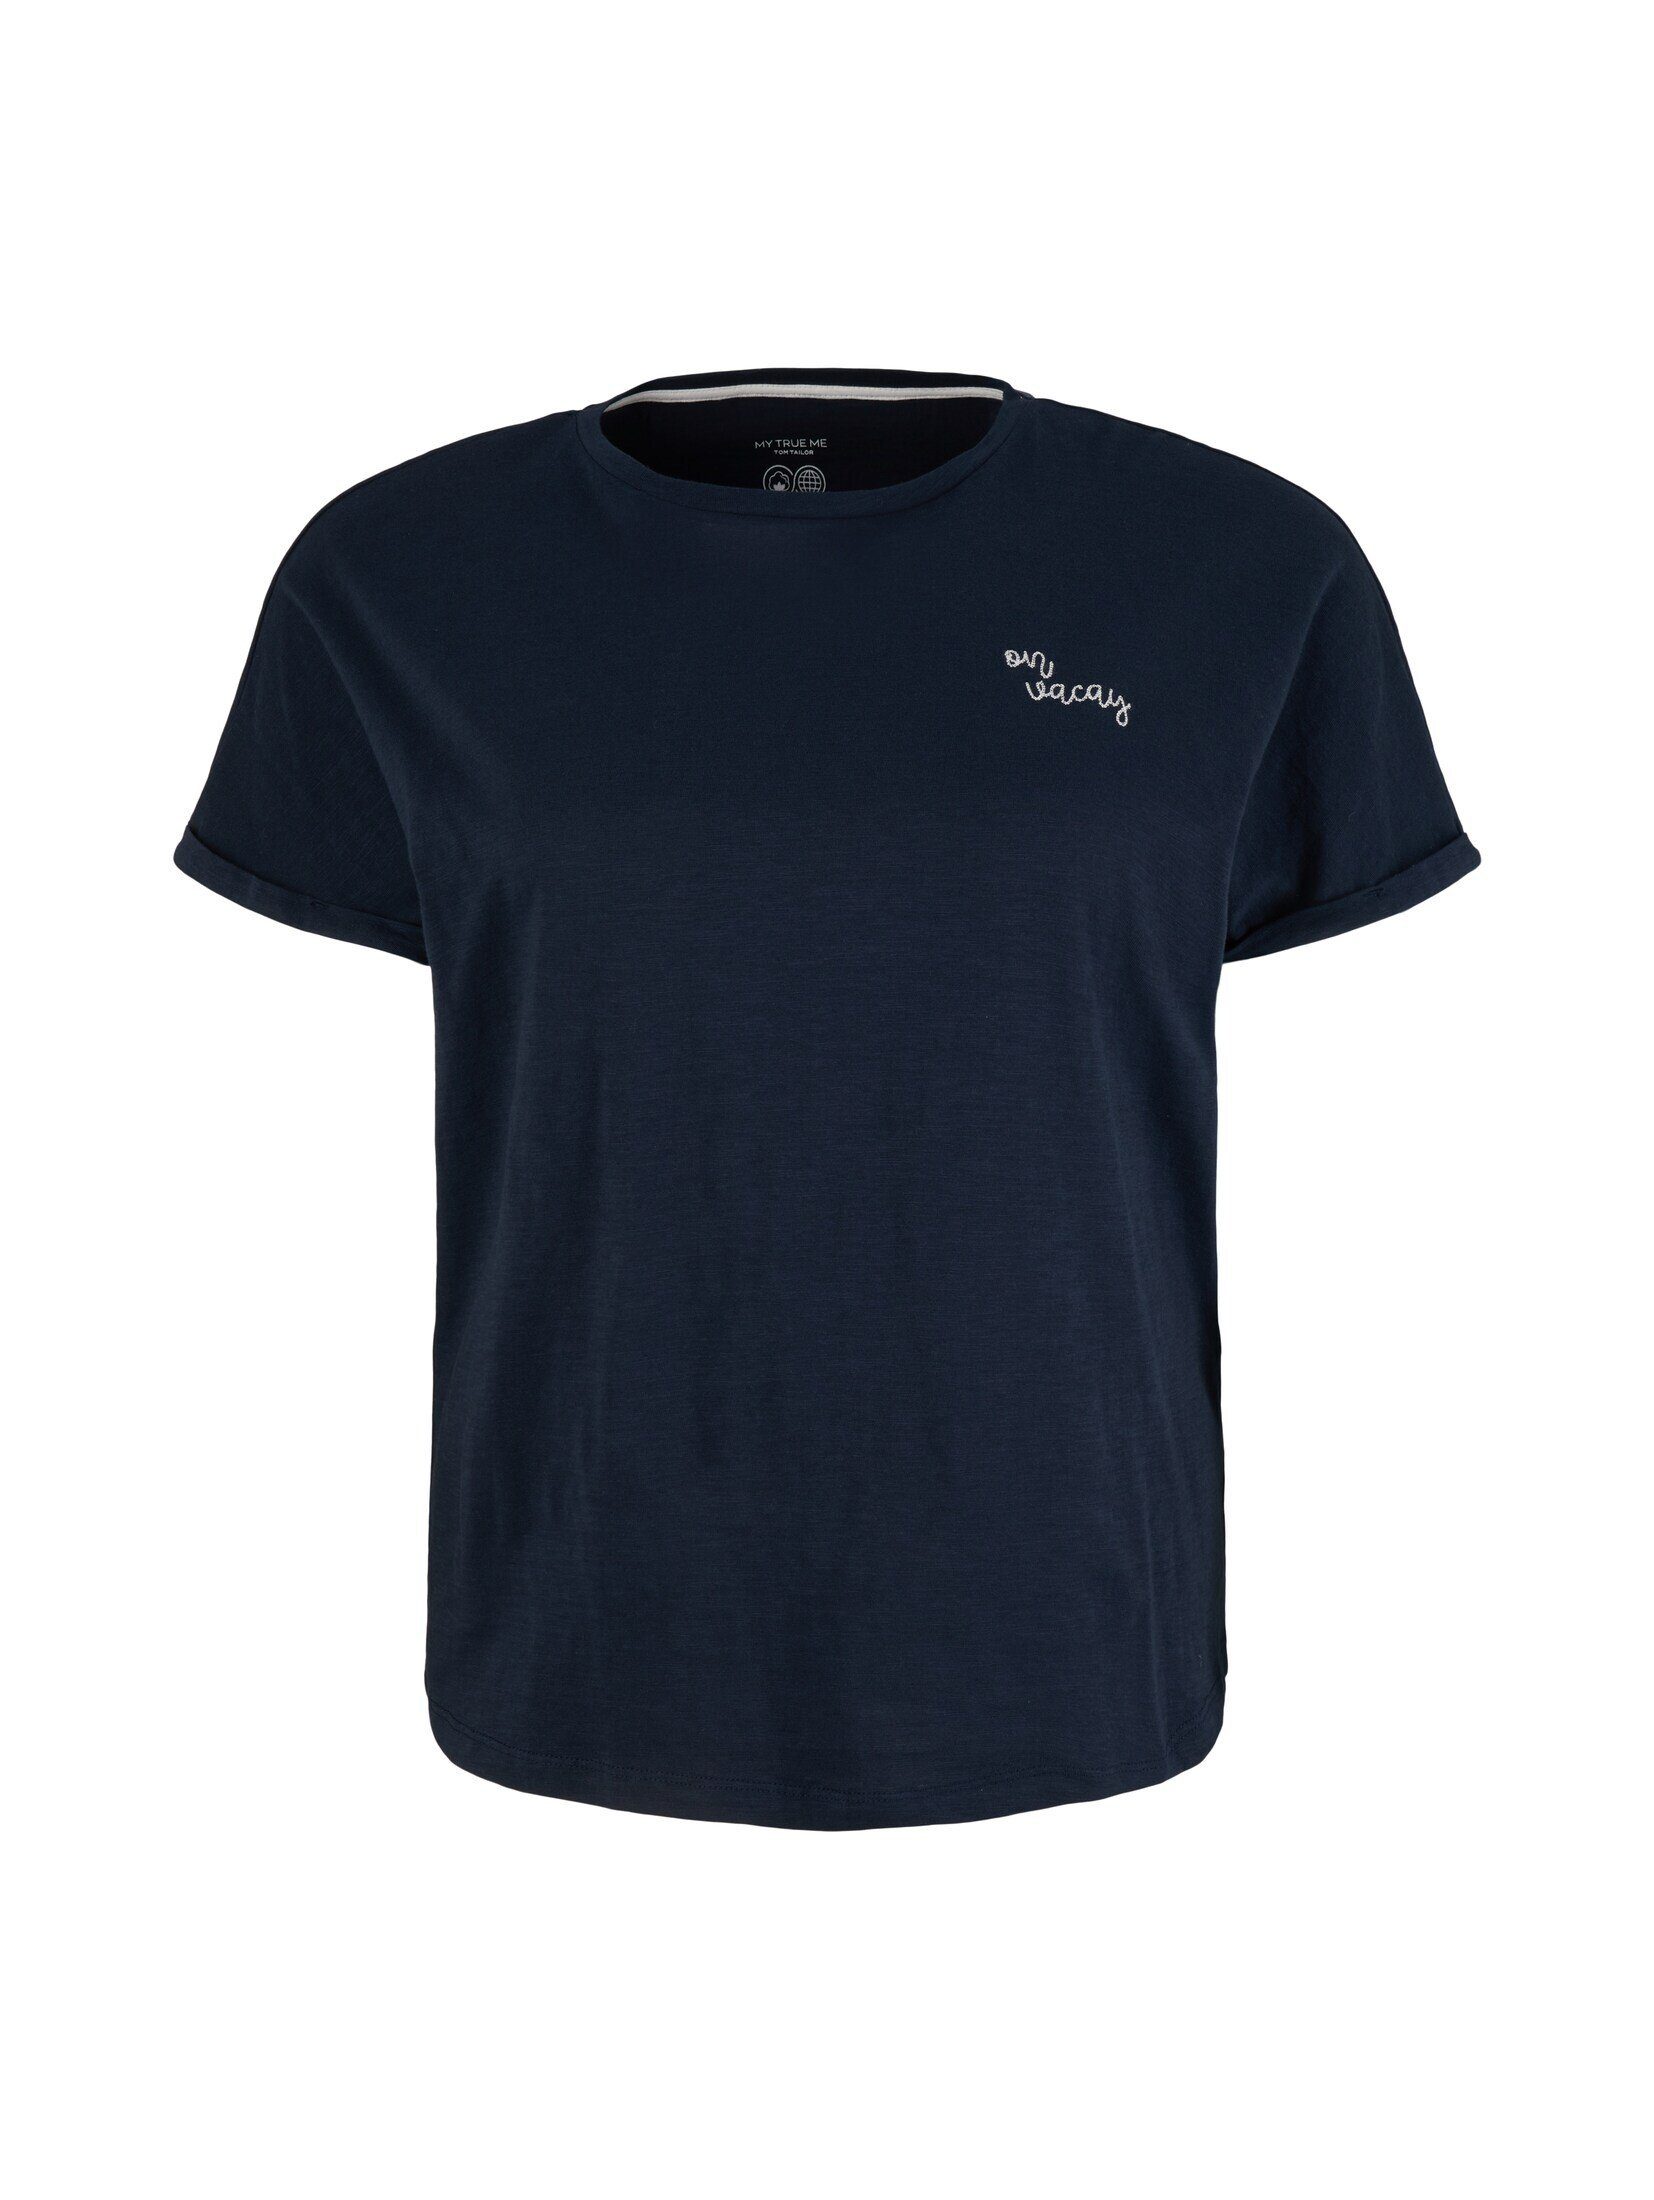 TAILOR TOM mit sky T-Shirt blue Plus - Stickerei PLUS T-Shirt captain